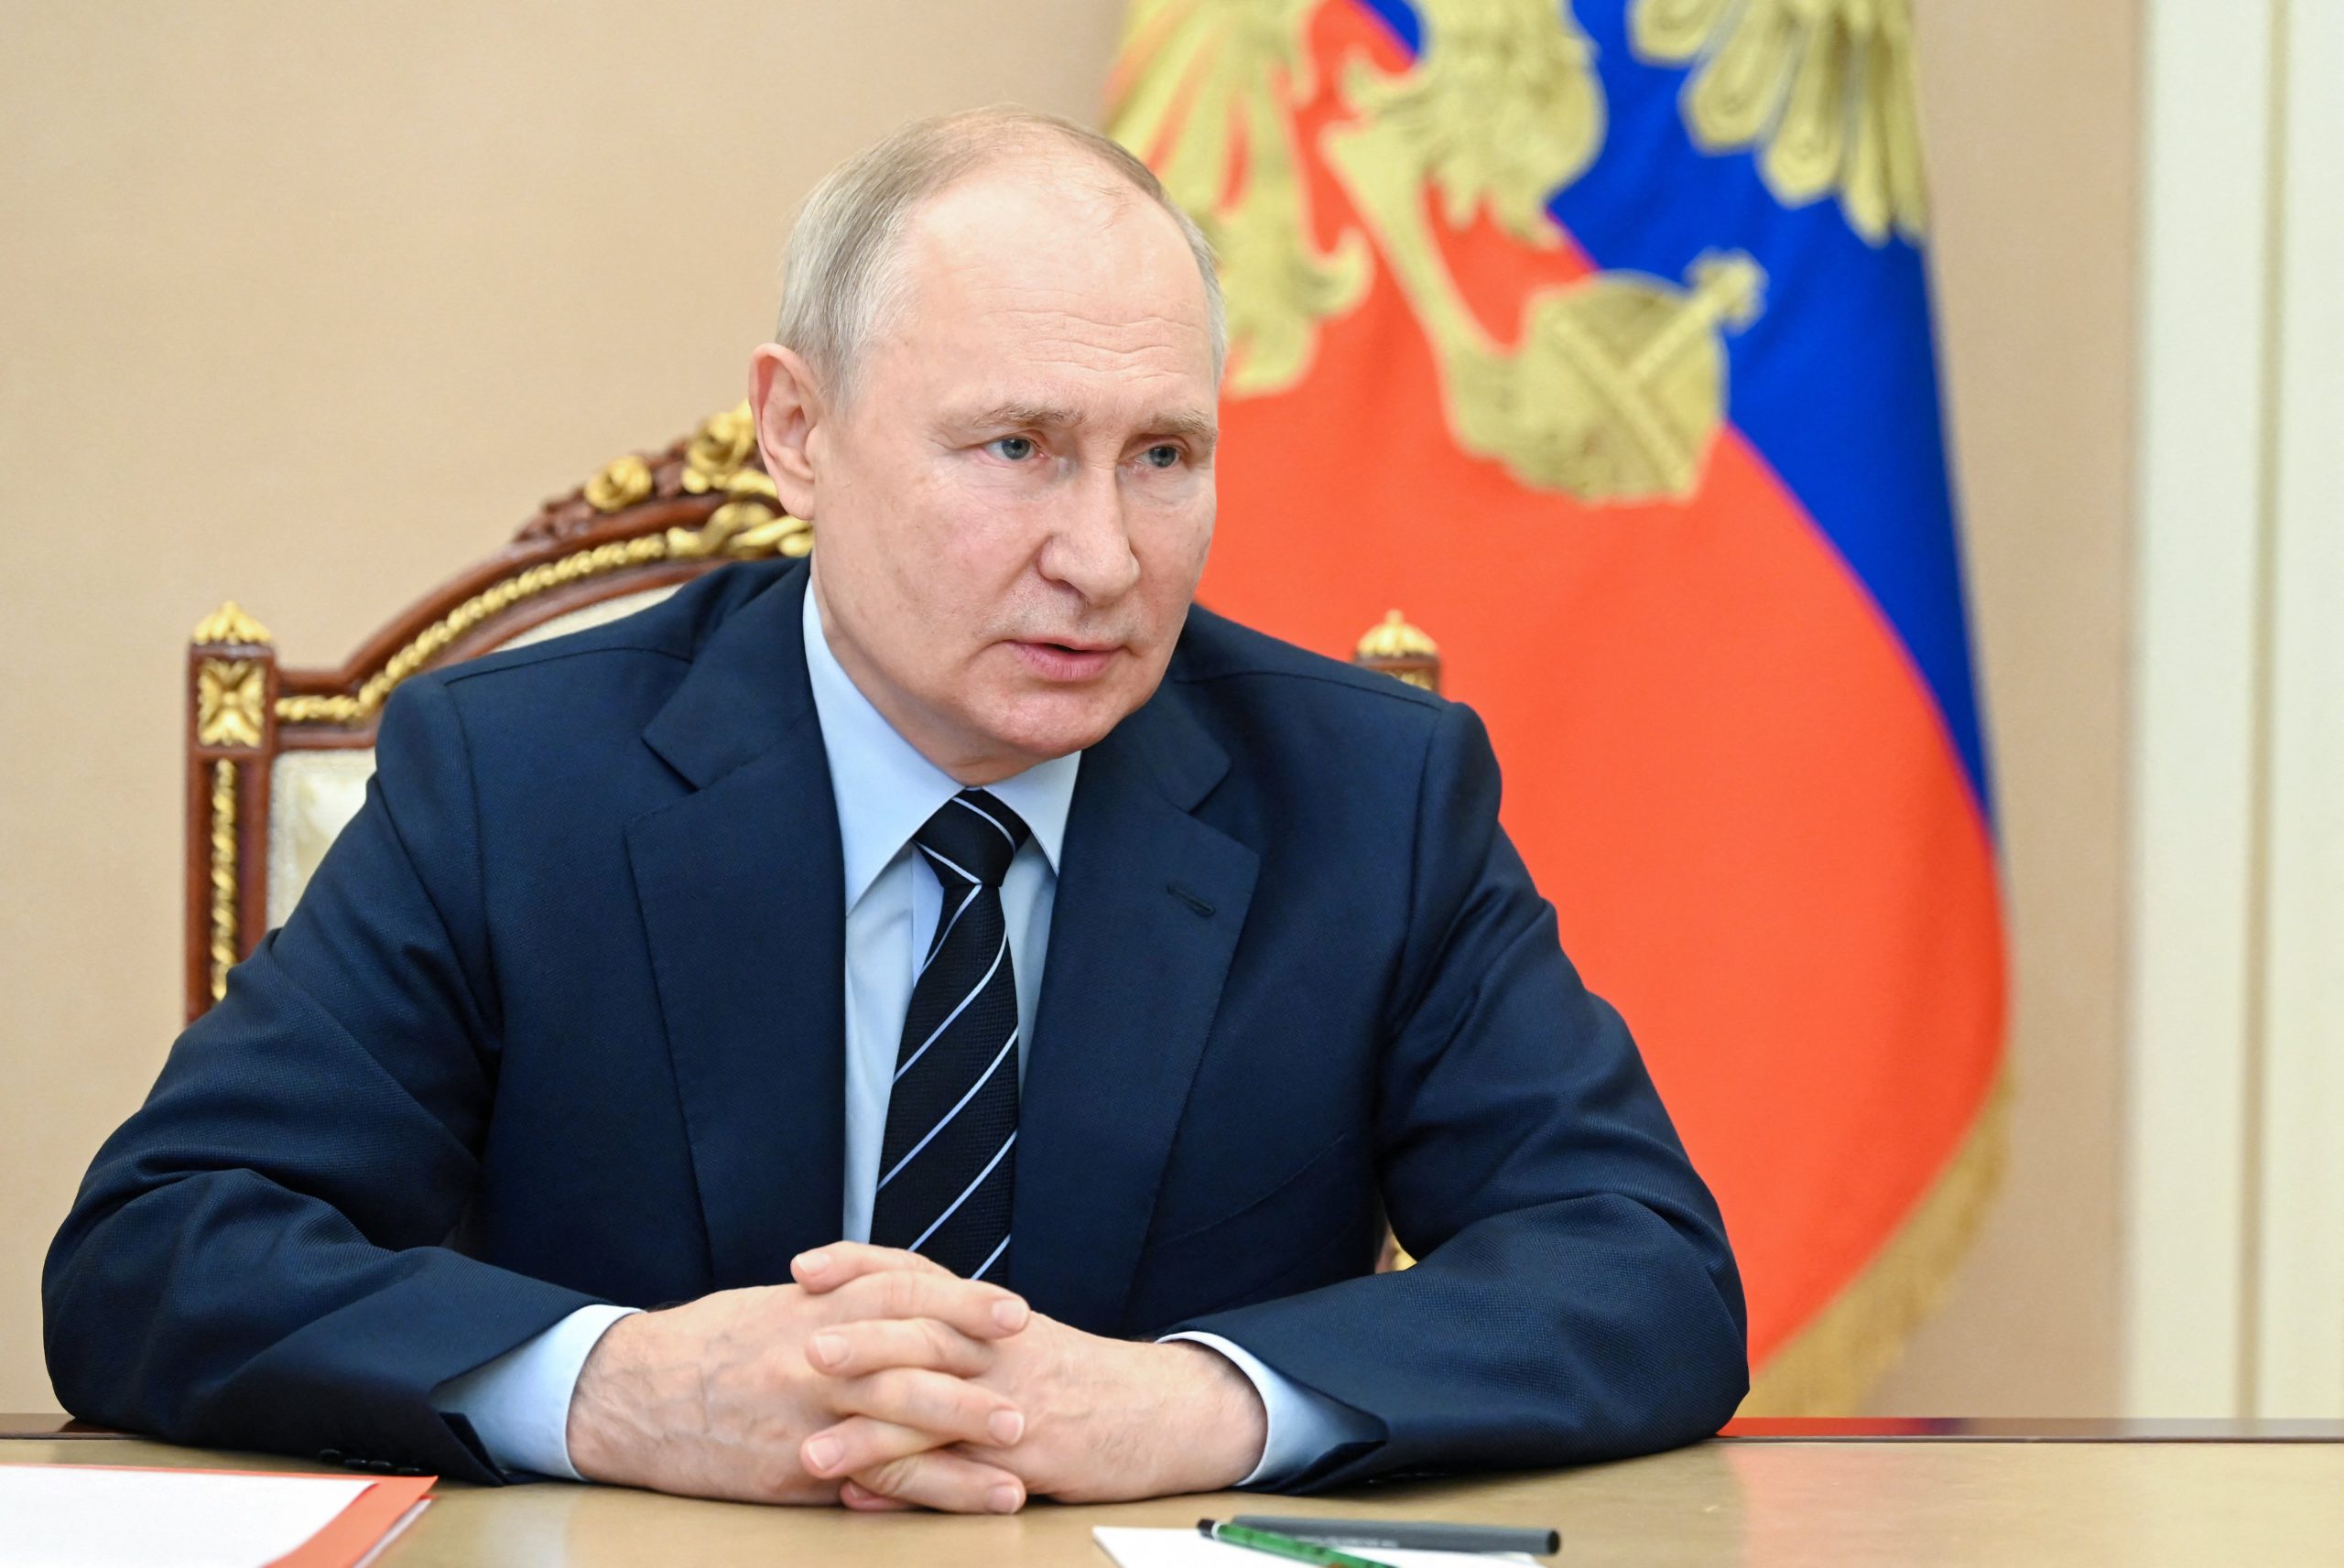  Putin deschide summitul Rusia-Africa de la Sankt Petersburg promiţând să livreze gratuit cereale în şase ţări africane